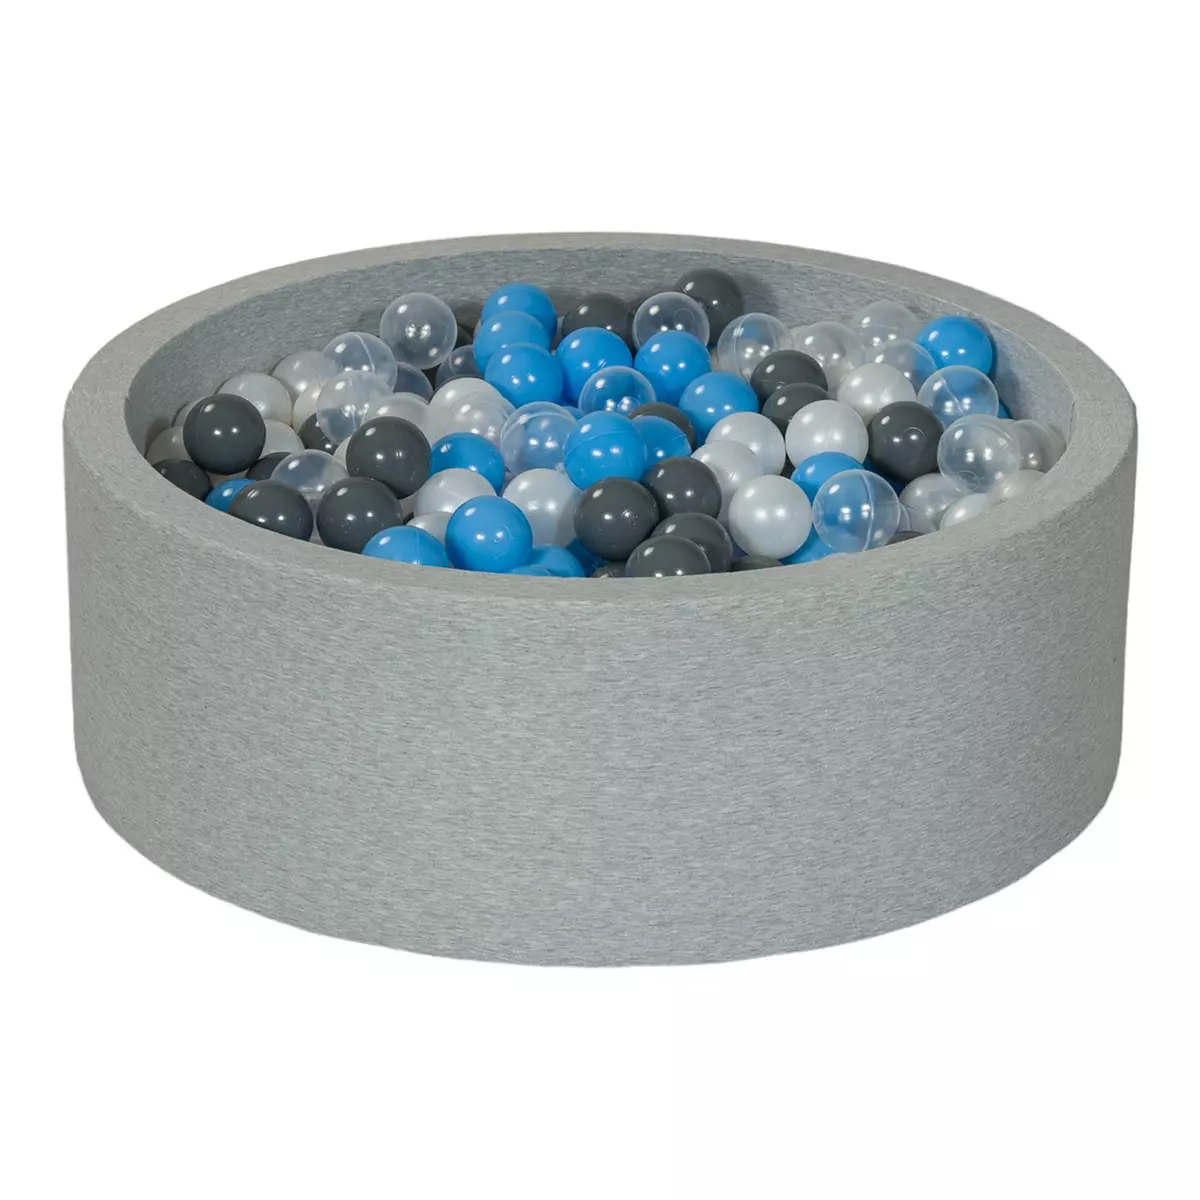  Piscine à balles Aire de jeu + 450 balles perle, transparent, gris, bleu clair